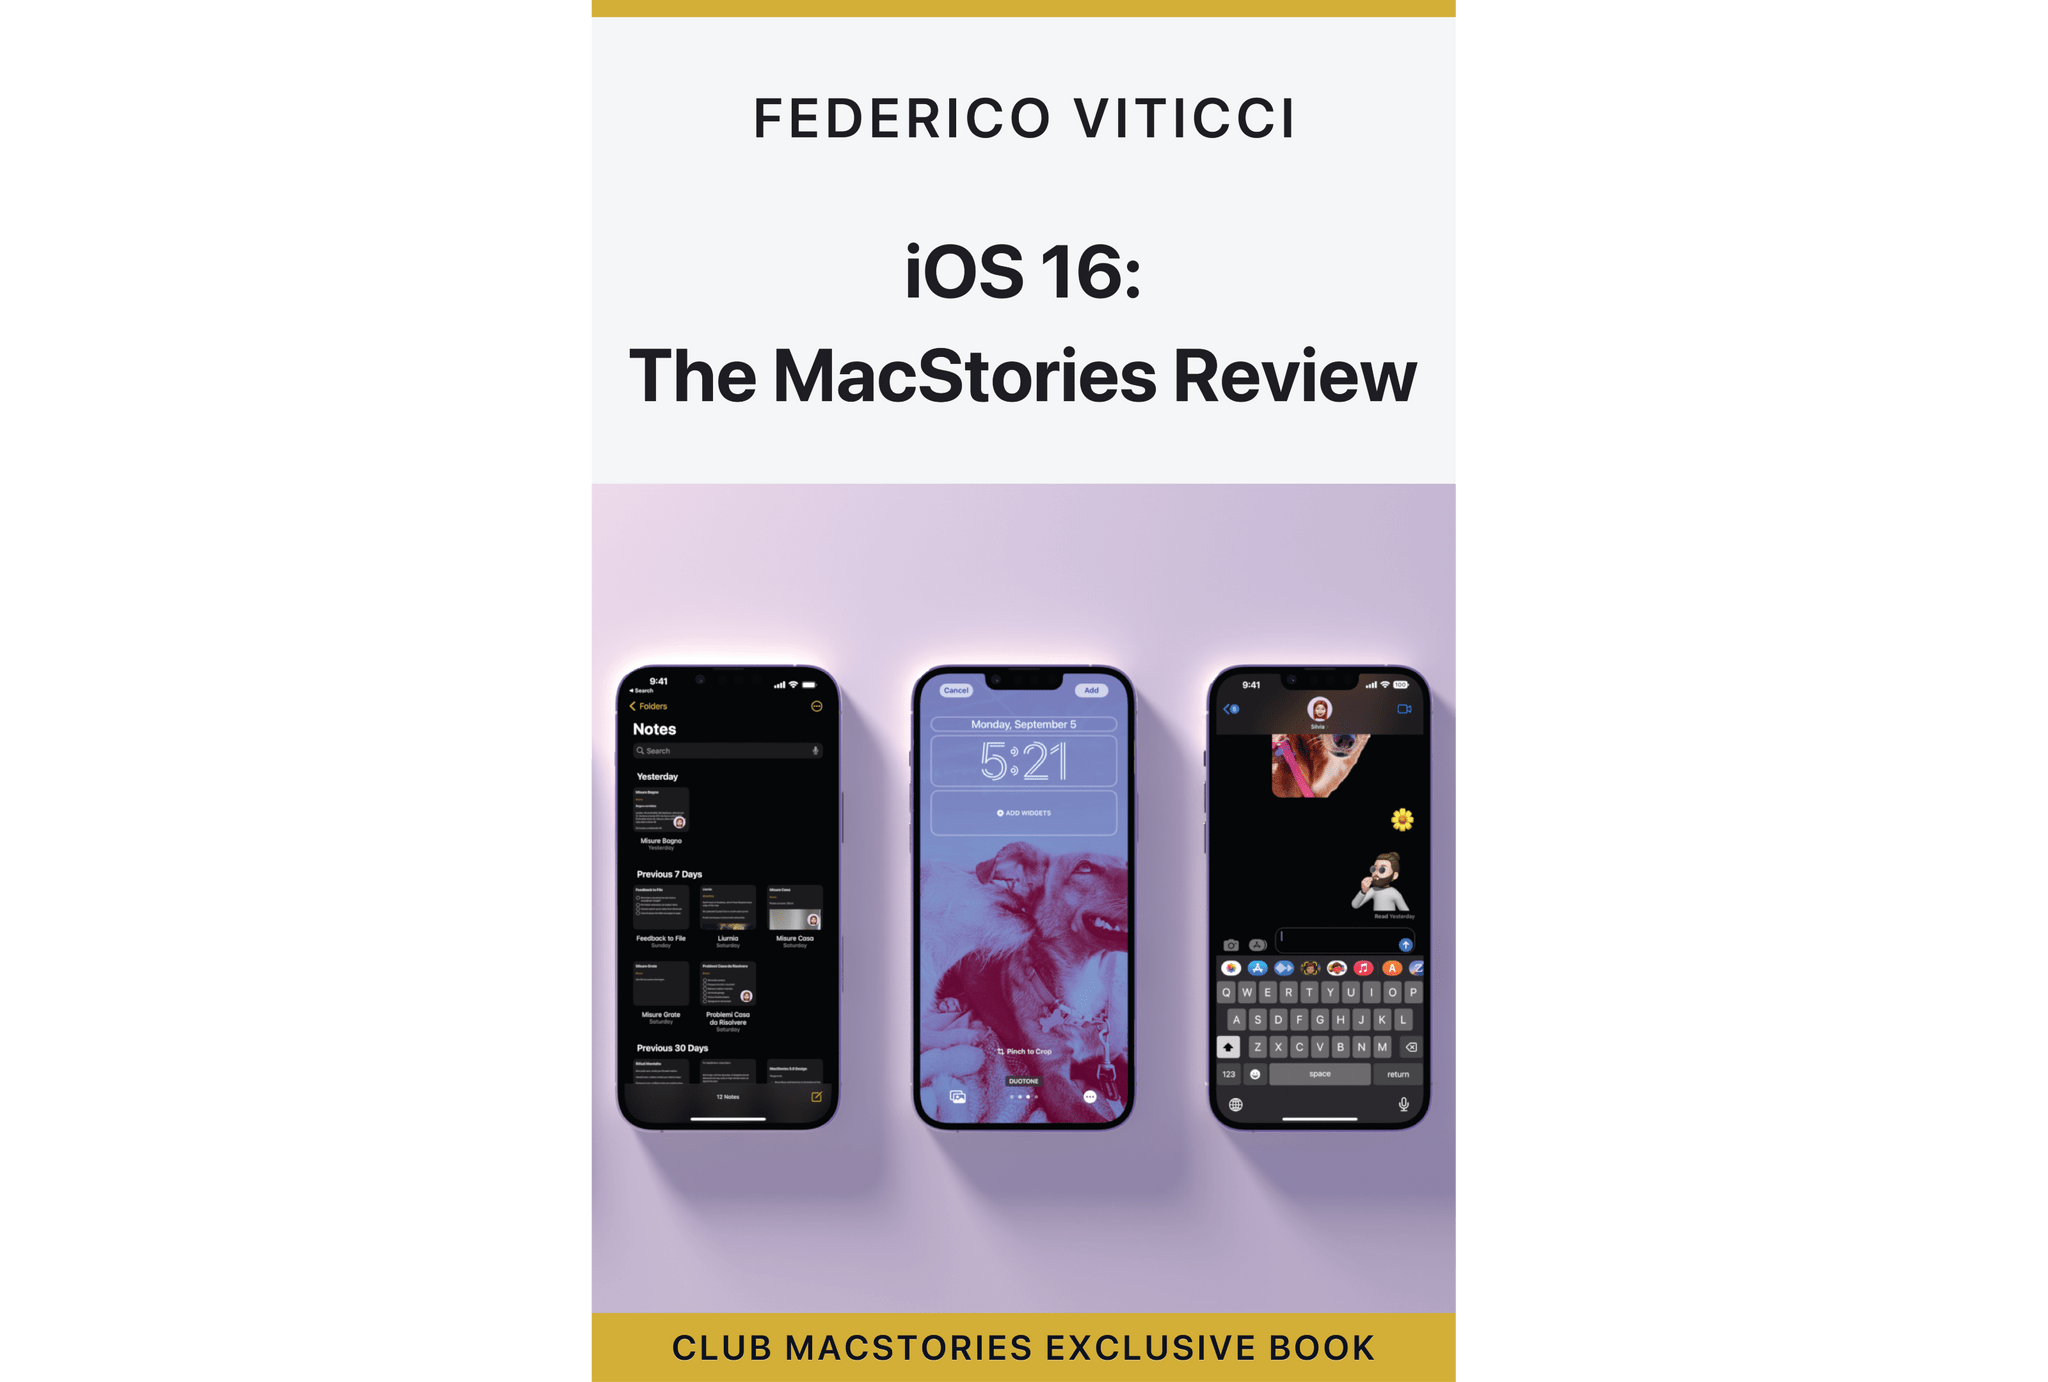 iOS 16: The MacStories Review, a Club MacStories exclusive